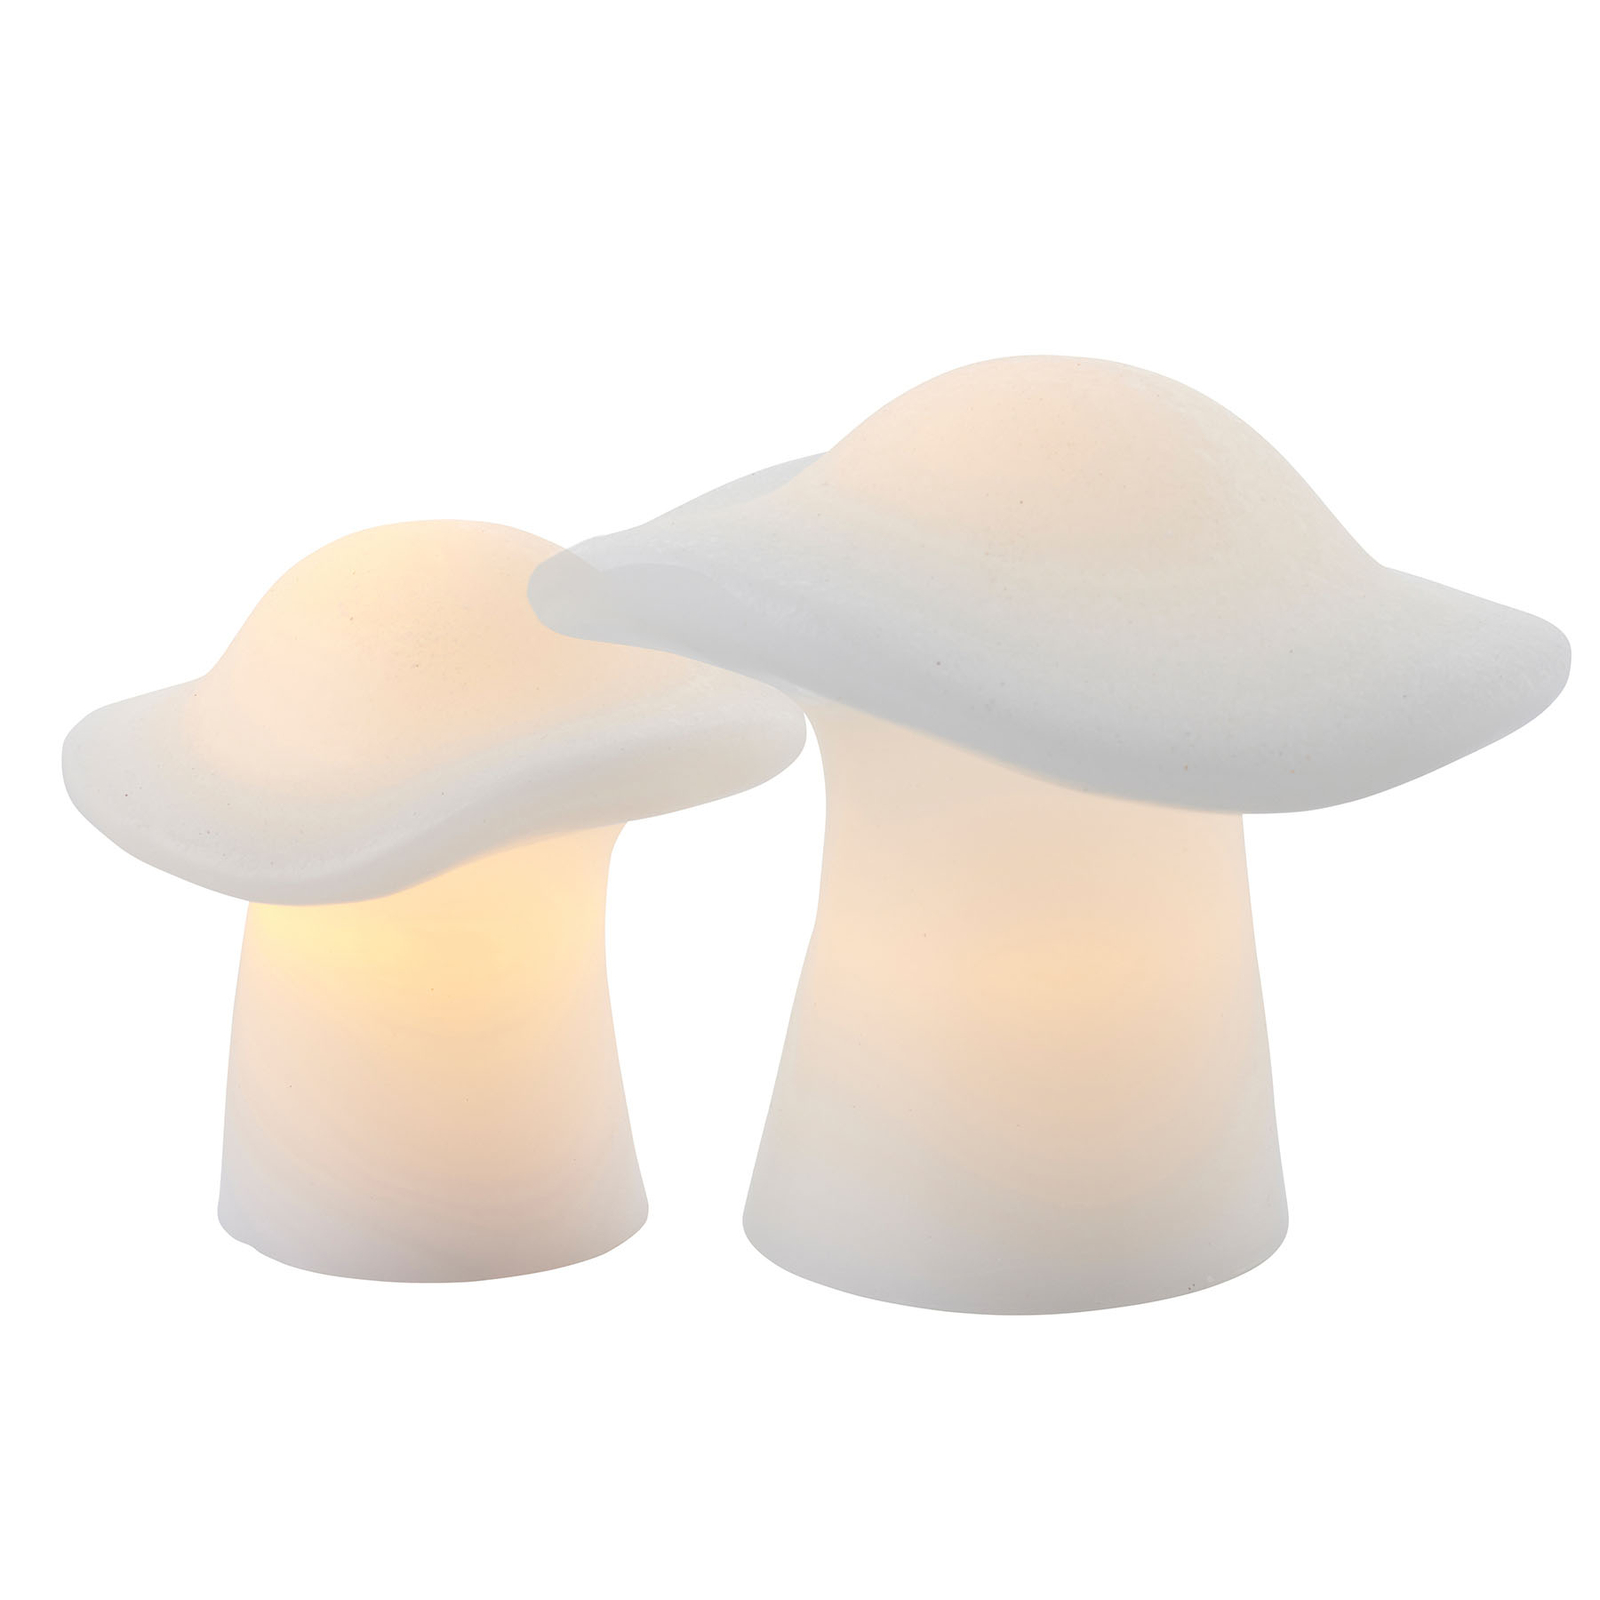 LED sfeerlamp Mushroom setE van 2